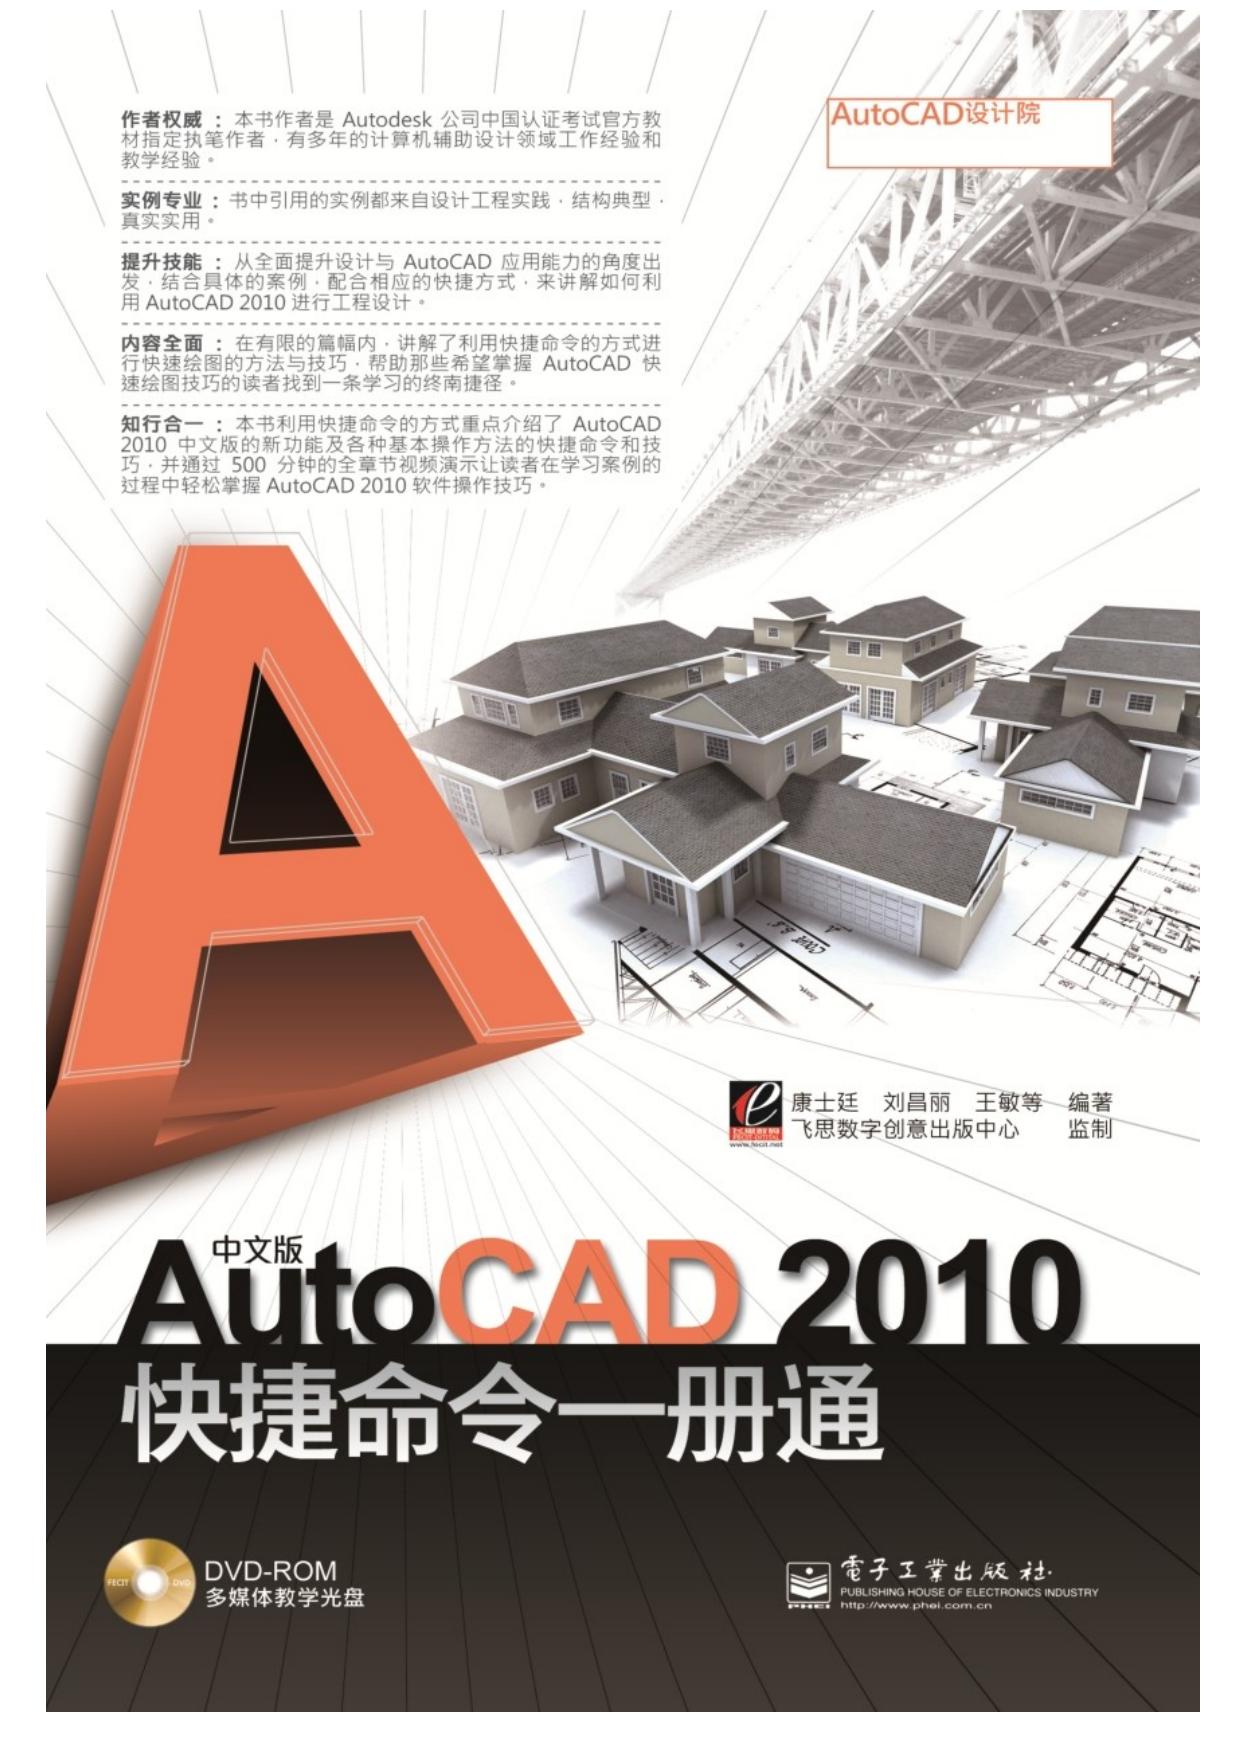 中文版AutoCAD 2010 快捷命令一册通